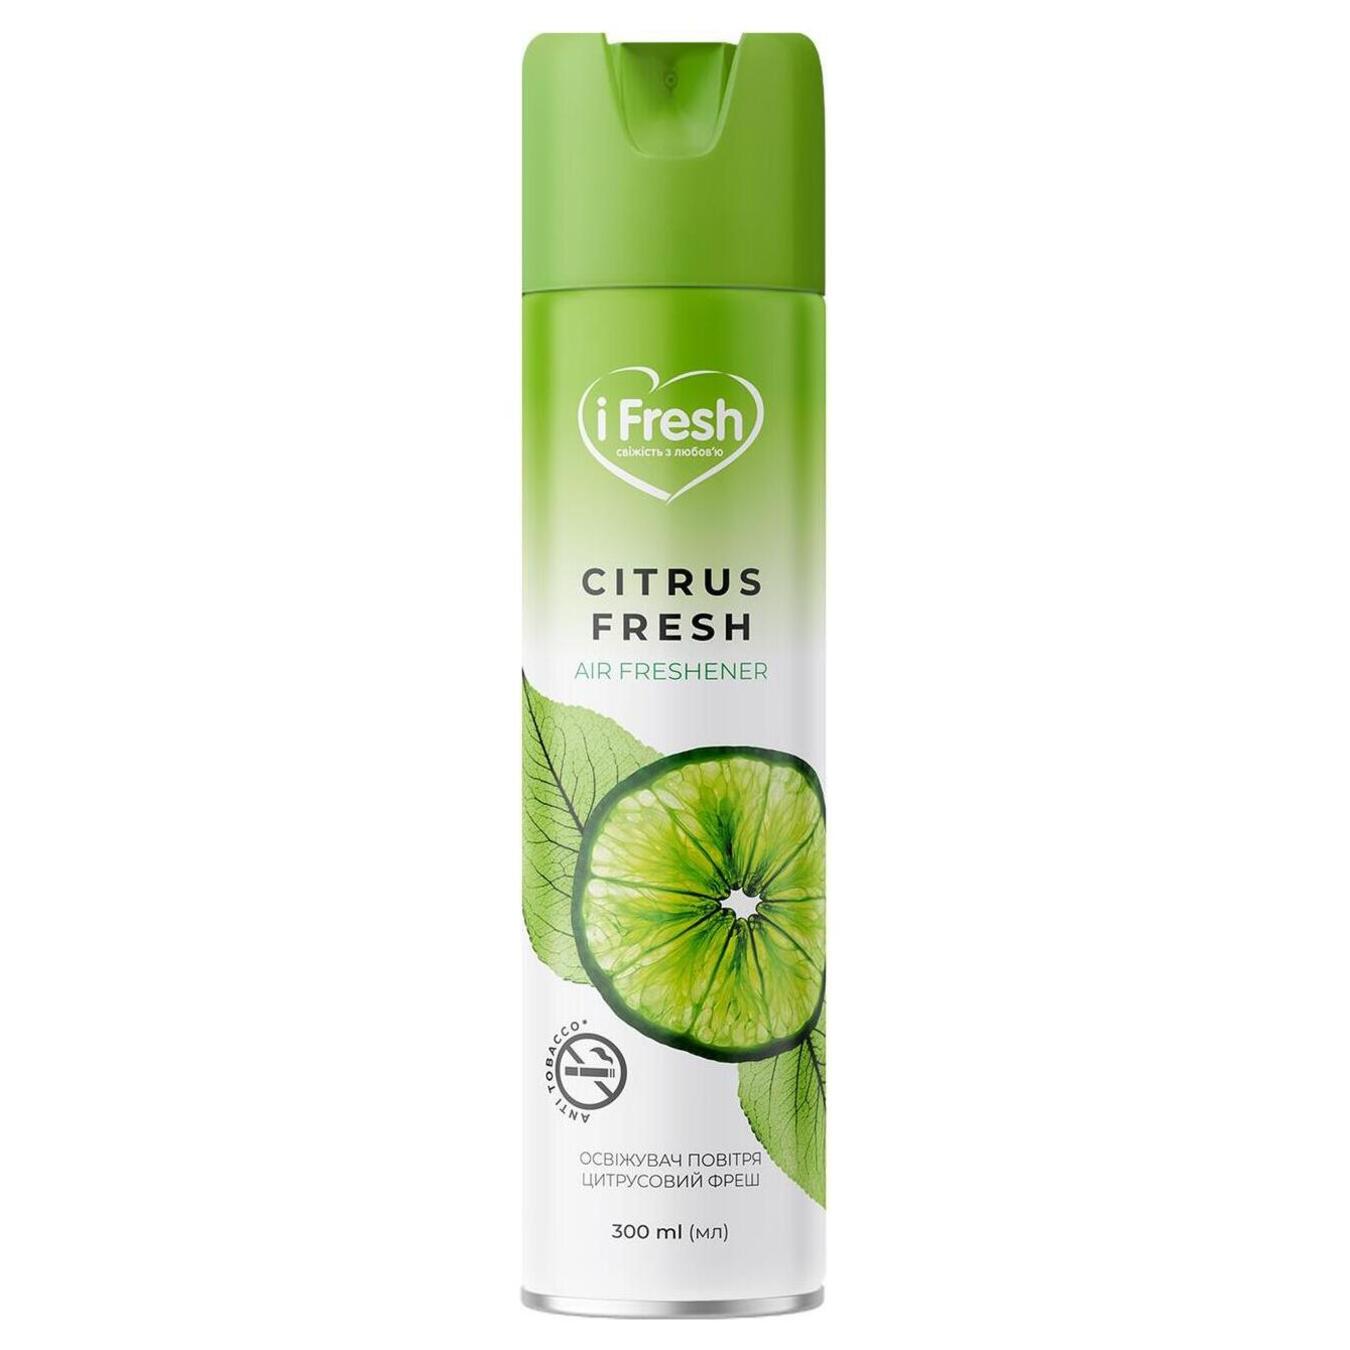 Air freshener iFresh Citrus fresh 300ml